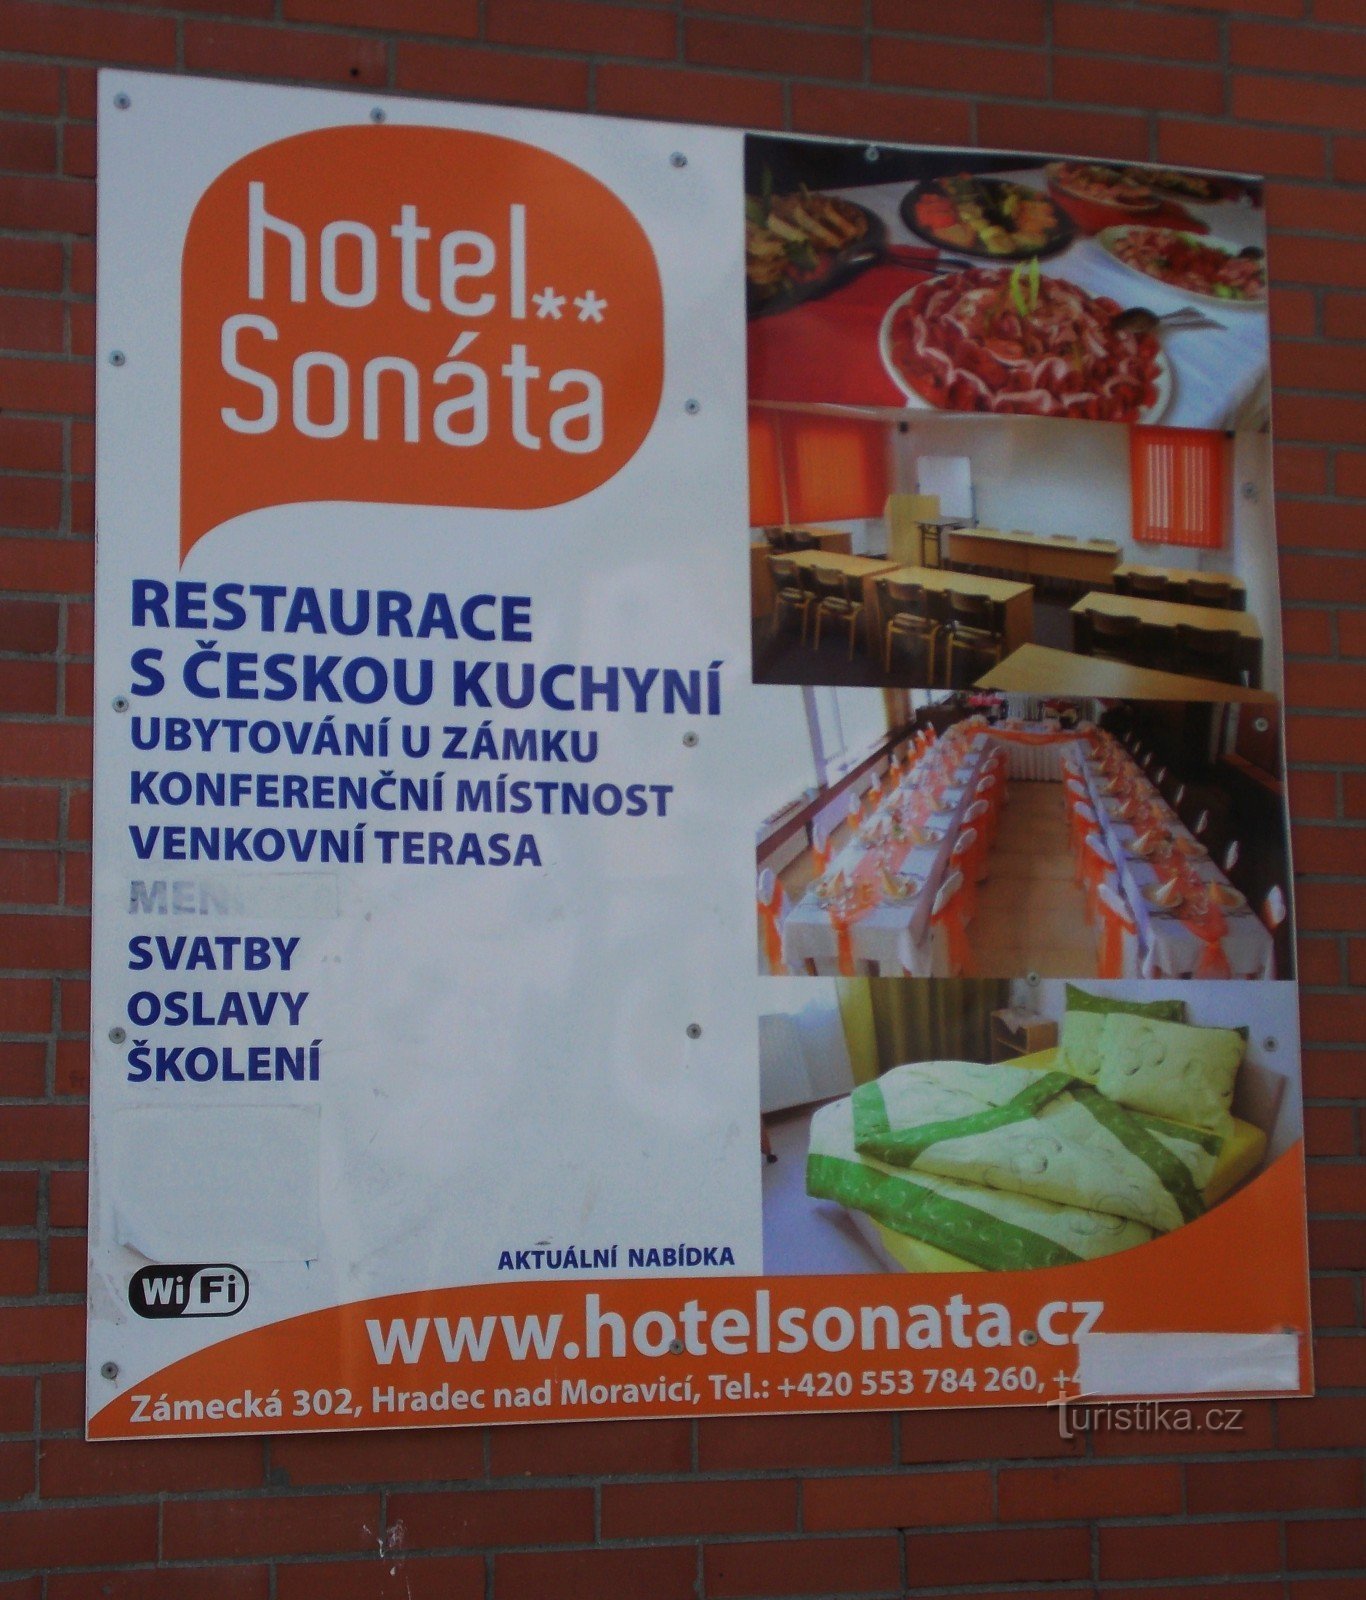 Hotel Sonata in Hradec nad Moravicí